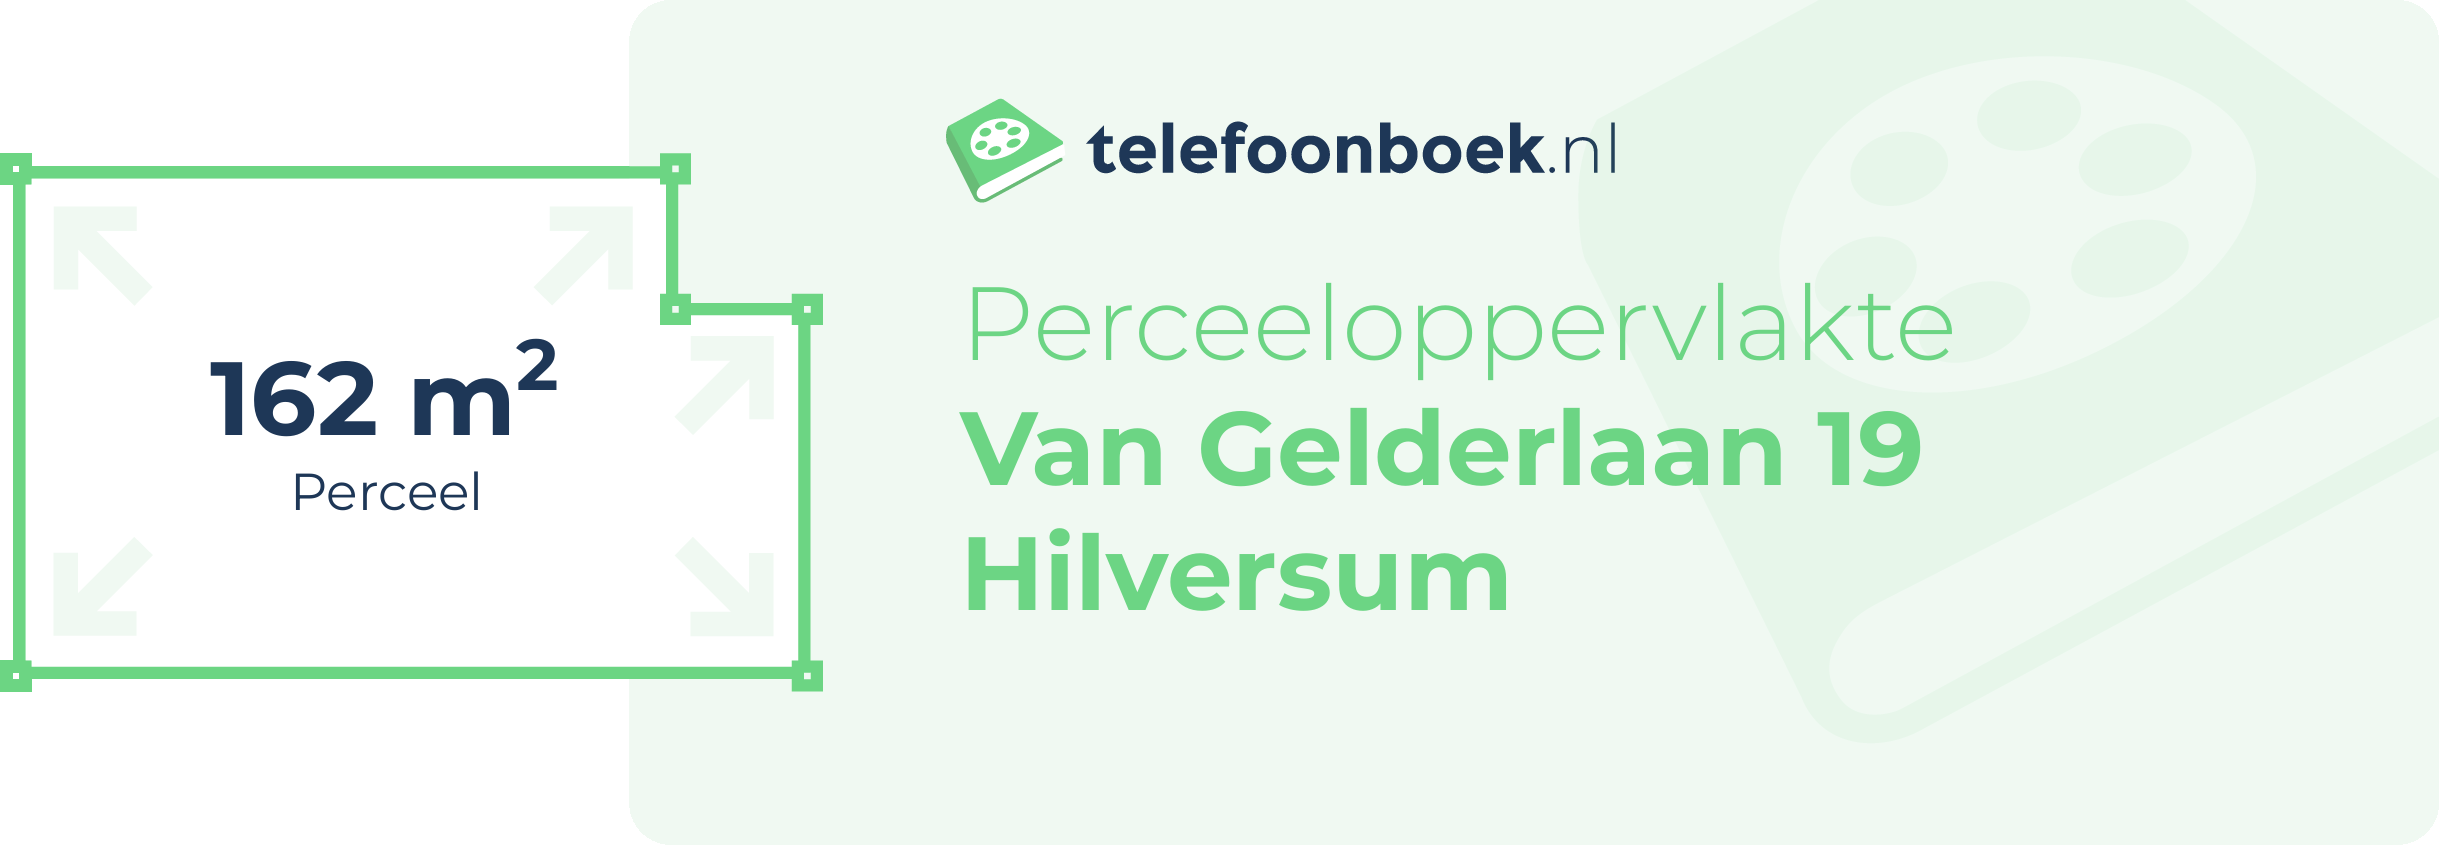 Perceeloppervlakte Van Gelderlaan 19 Hilversum